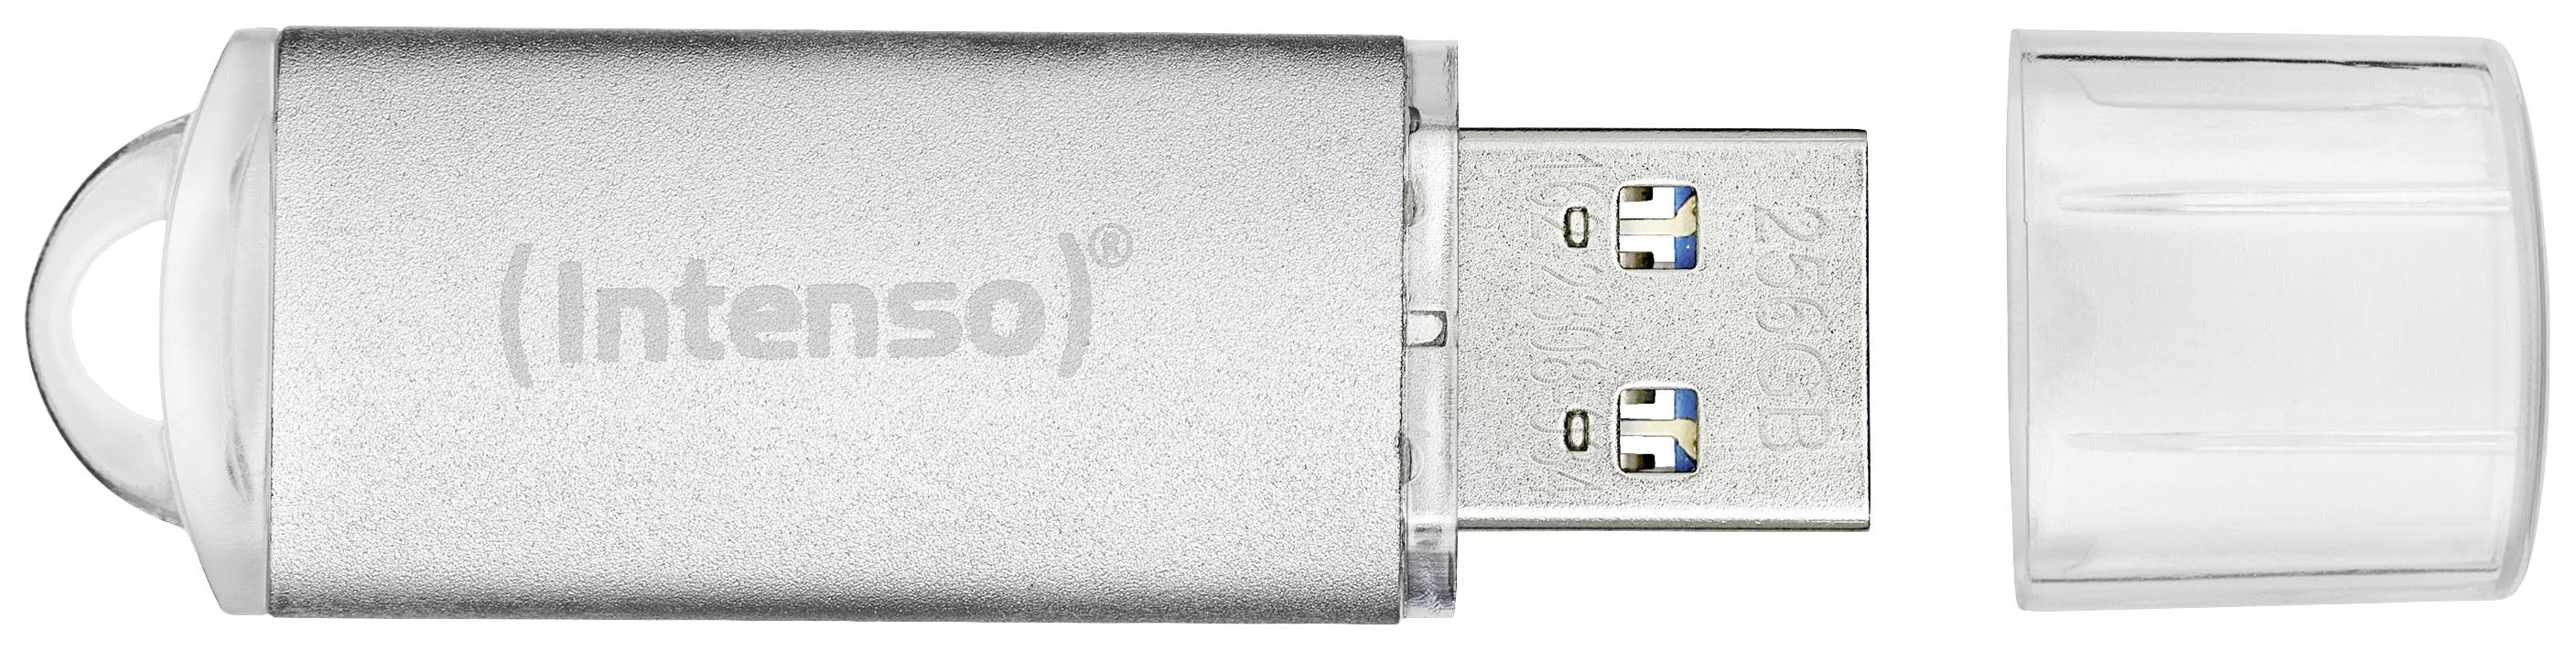 INTENSO USB-St.Jet Line 32GB